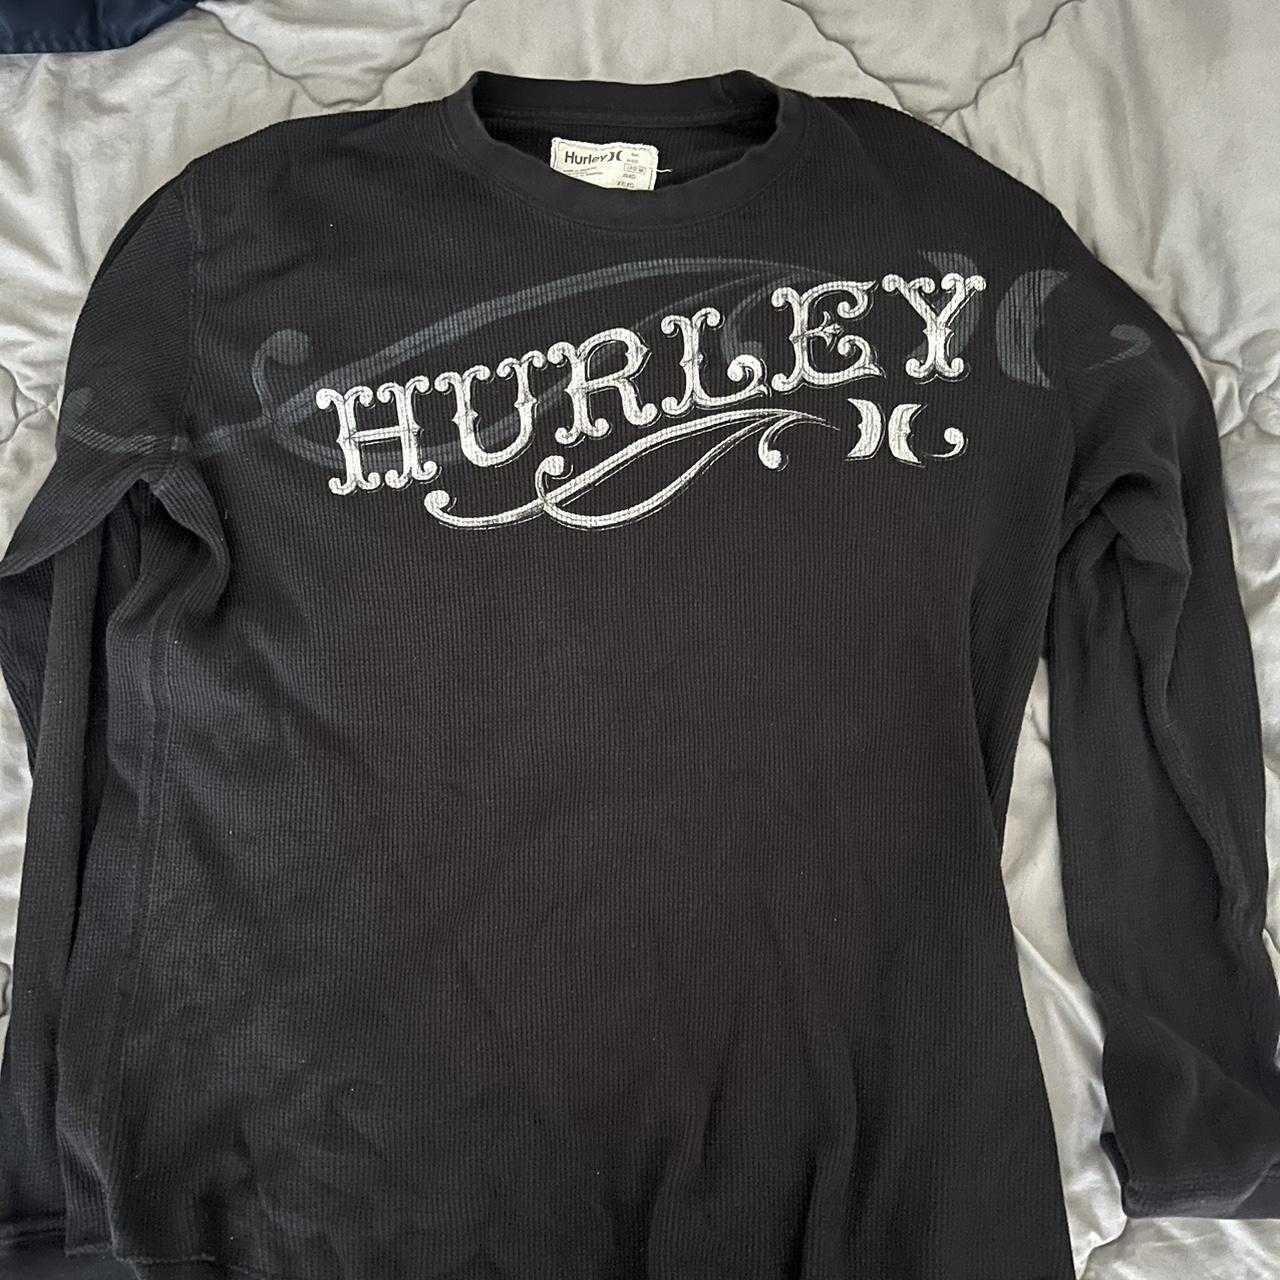 Vintage Hurley thermal Hella nice 10/10 no holes or... - Depop